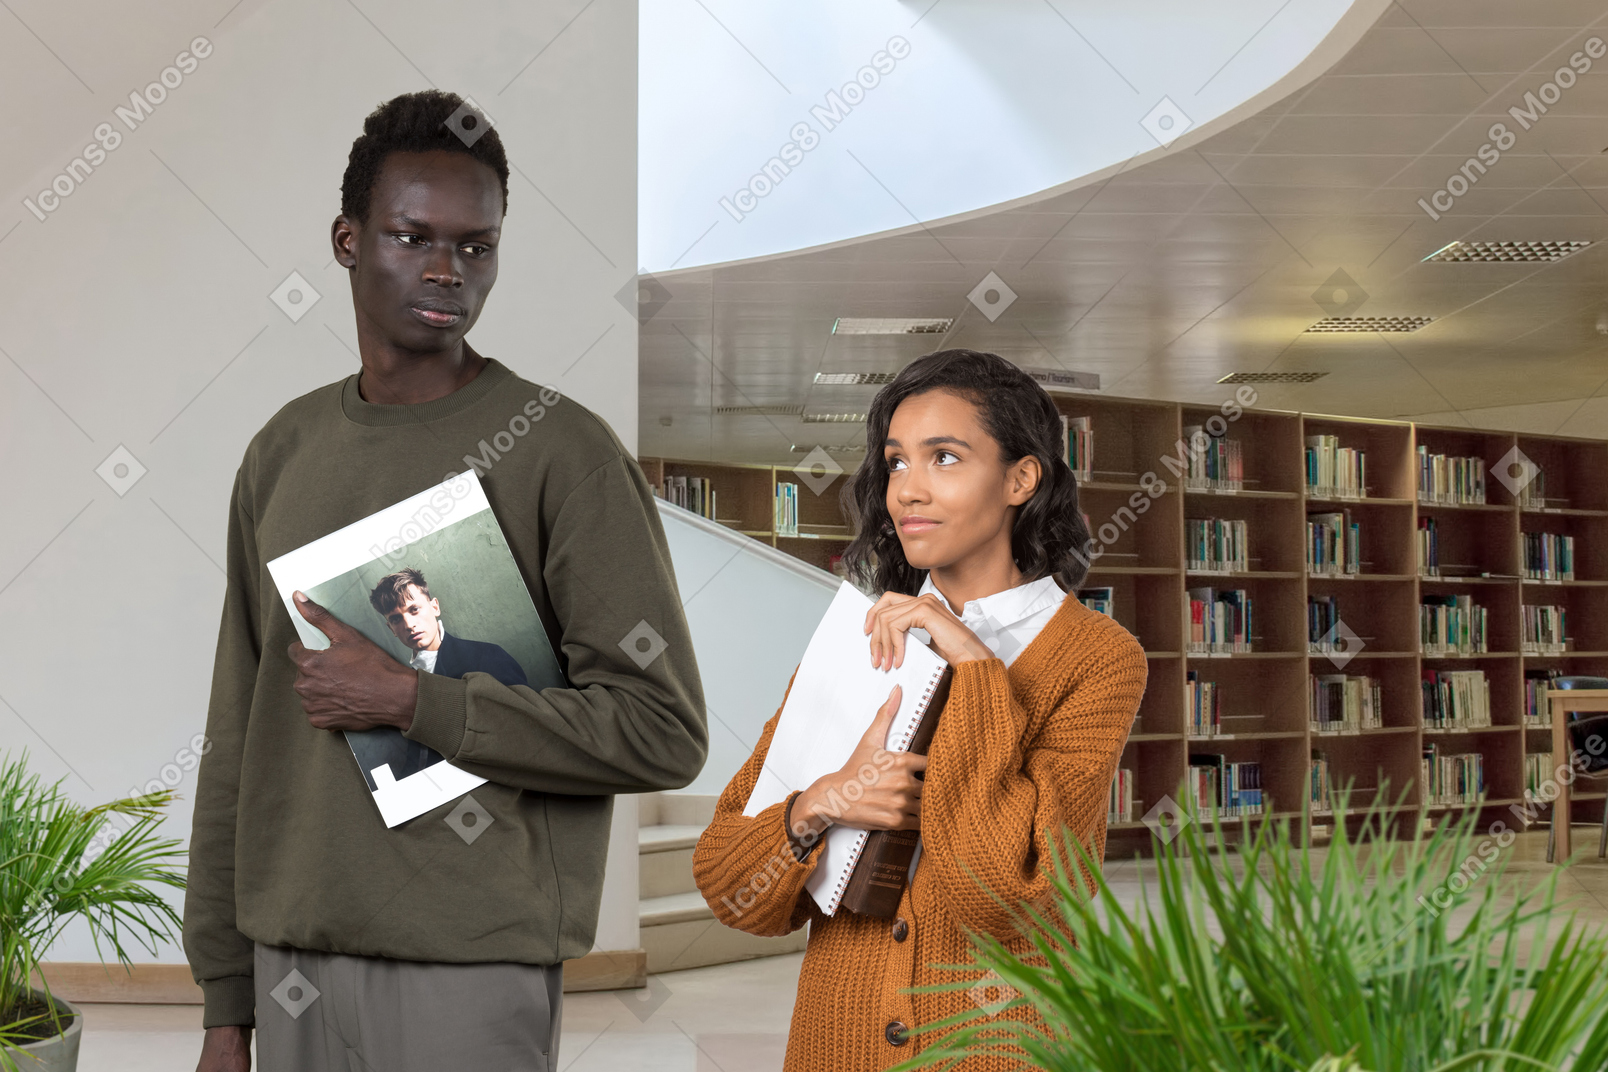 一个黑色穿着谦虚的女人，手里拿着书，深情地看着图书馆里那个严肃的黑人，她没有注意到她的样子